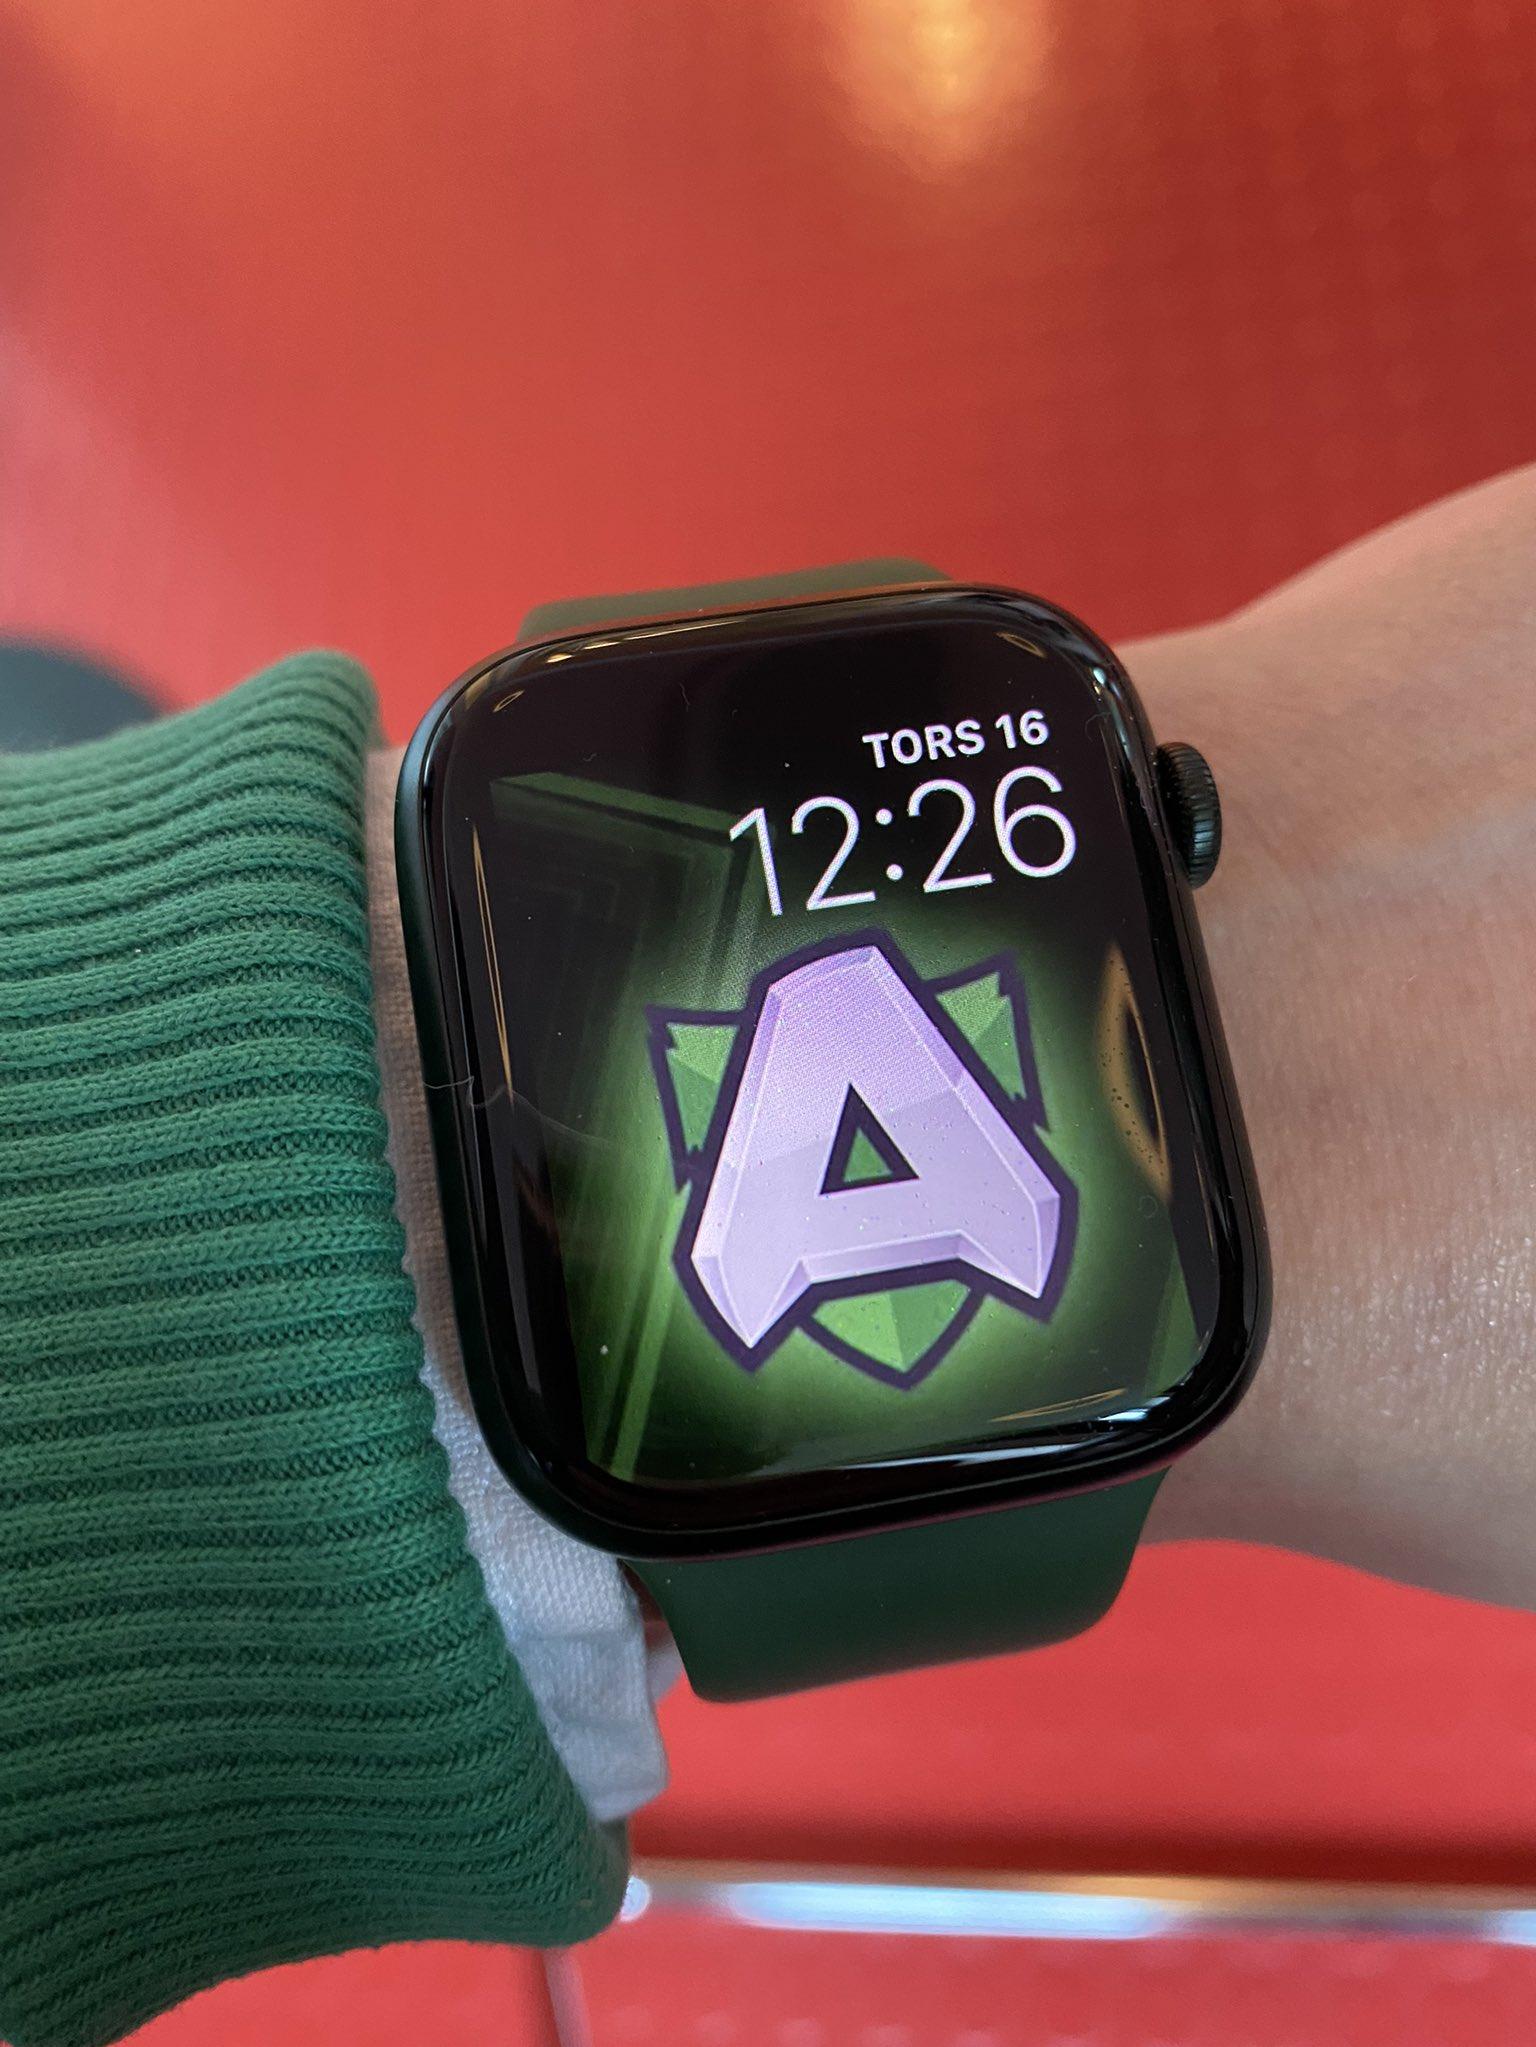 Joakim Akterhall On Got An Apple Watch From Work Tiqqe